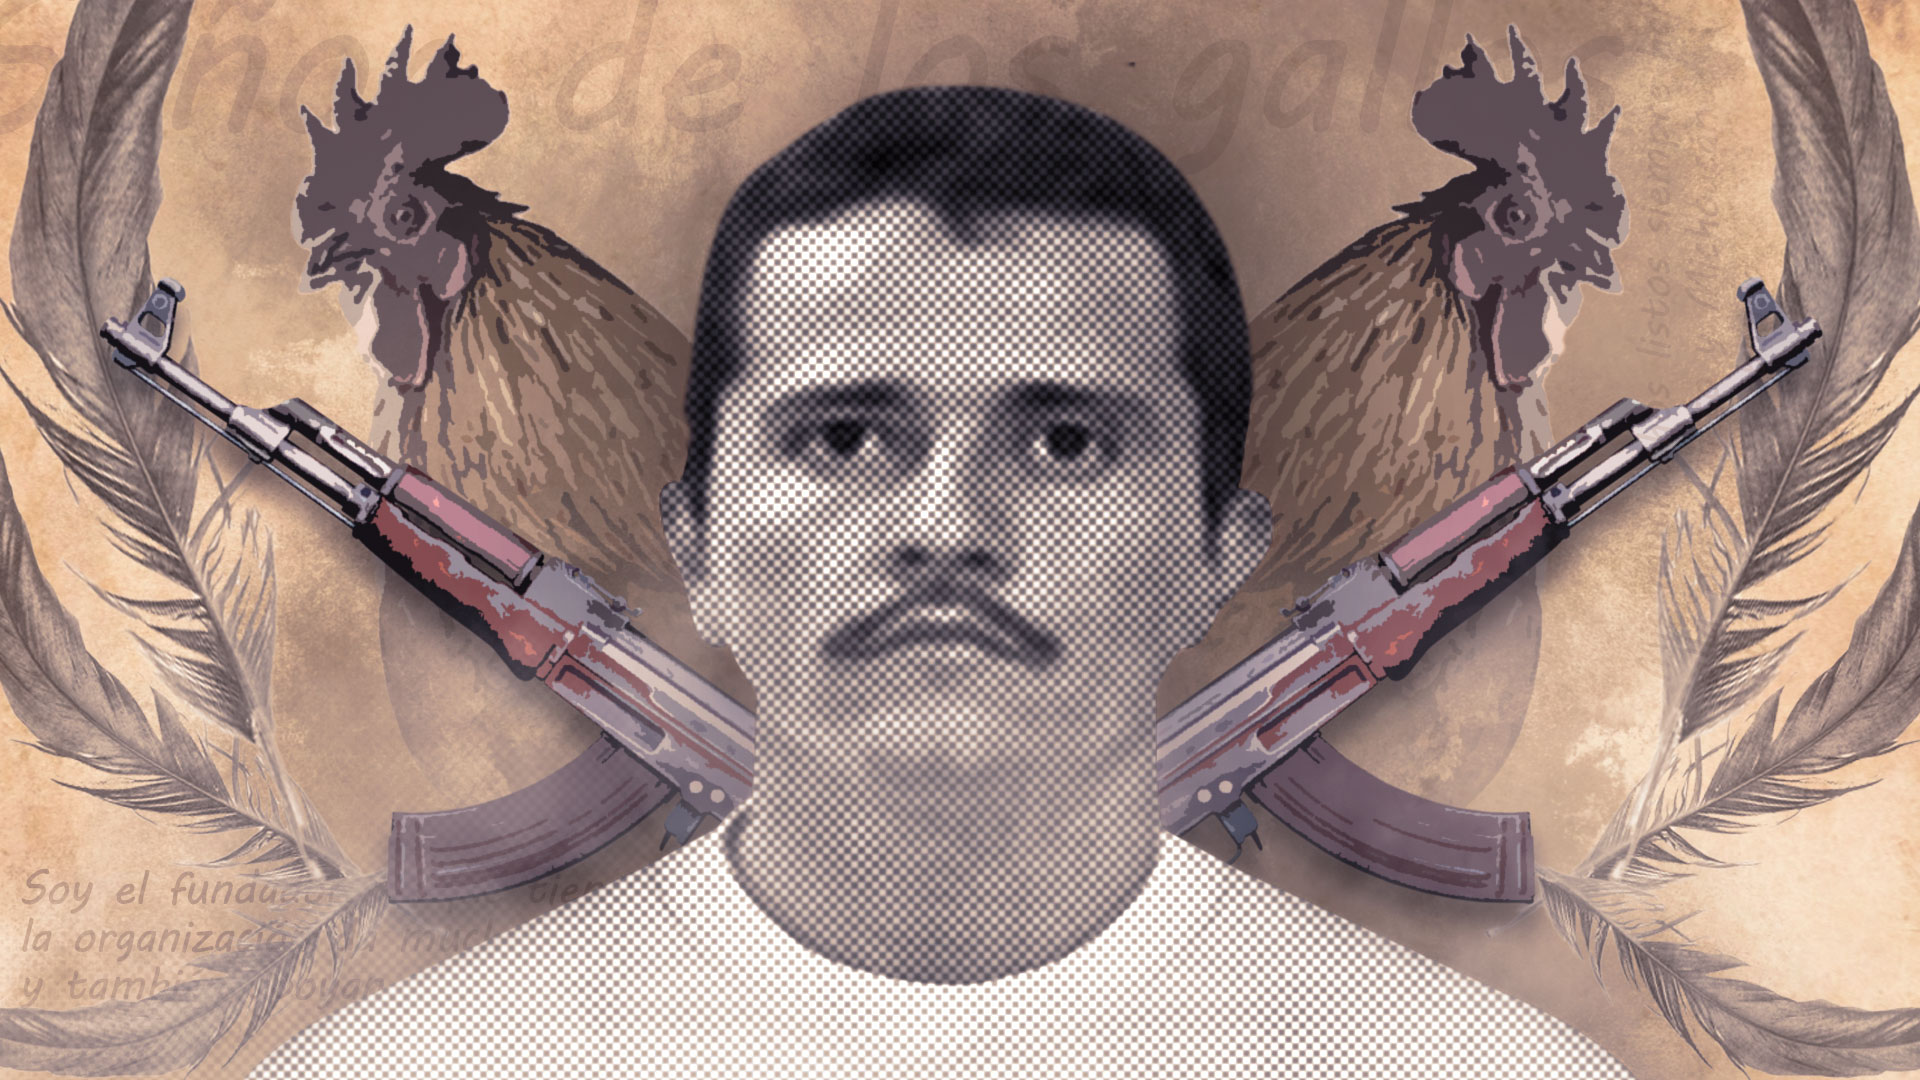 Las investigaciones apuntaron que el cártel de Nemesio Oseguera Cervantes, alias "El Mencho", estaría detrás de las extorsiones a comerciantes. (Infobae México / Jovani Pérez)